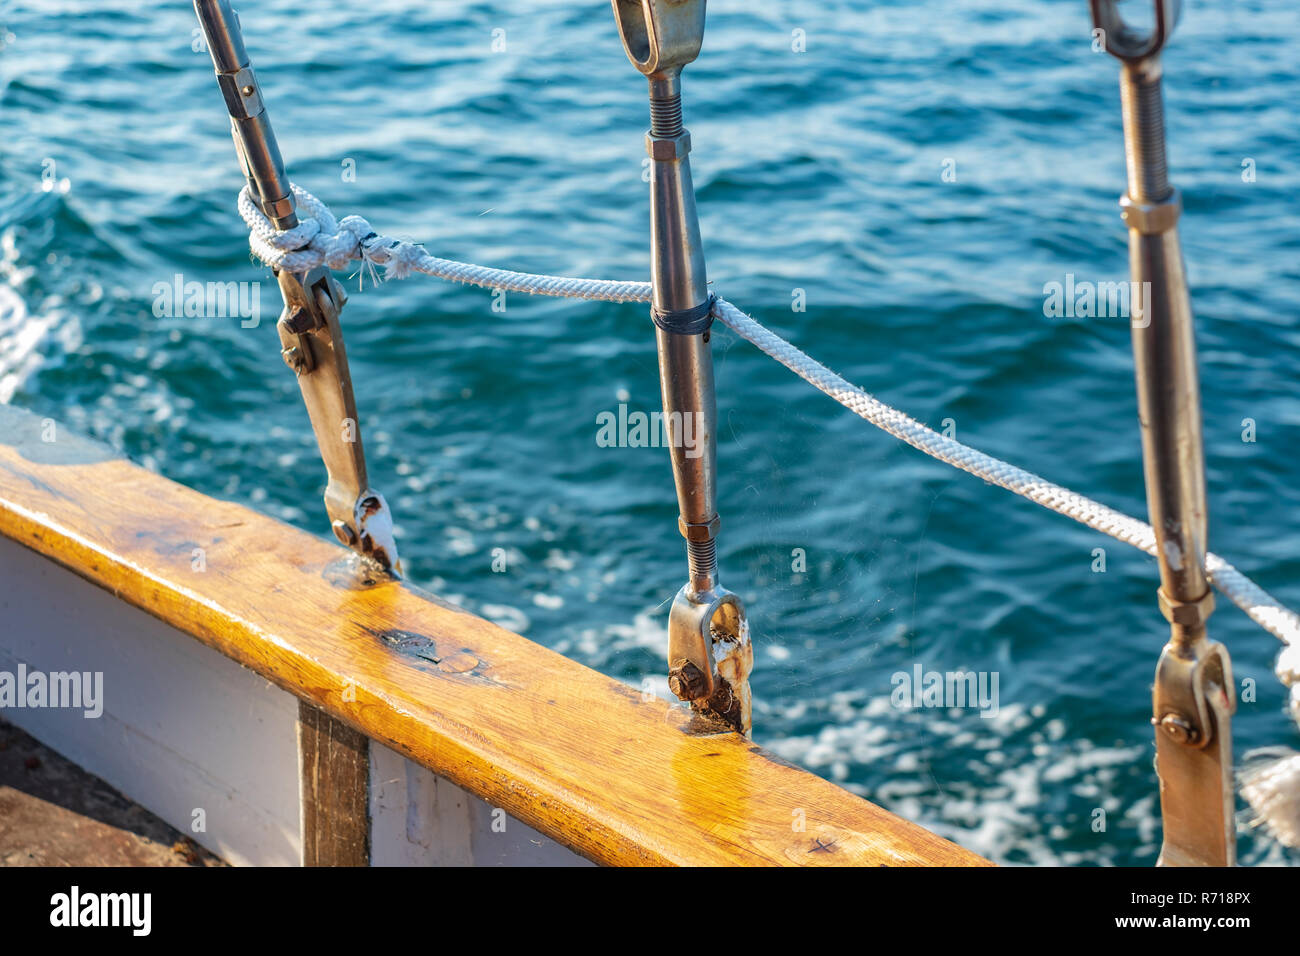 Die Details der Takelage eines Segeln cutter schaffen eine maritime Atmosphäre. Stockfoto